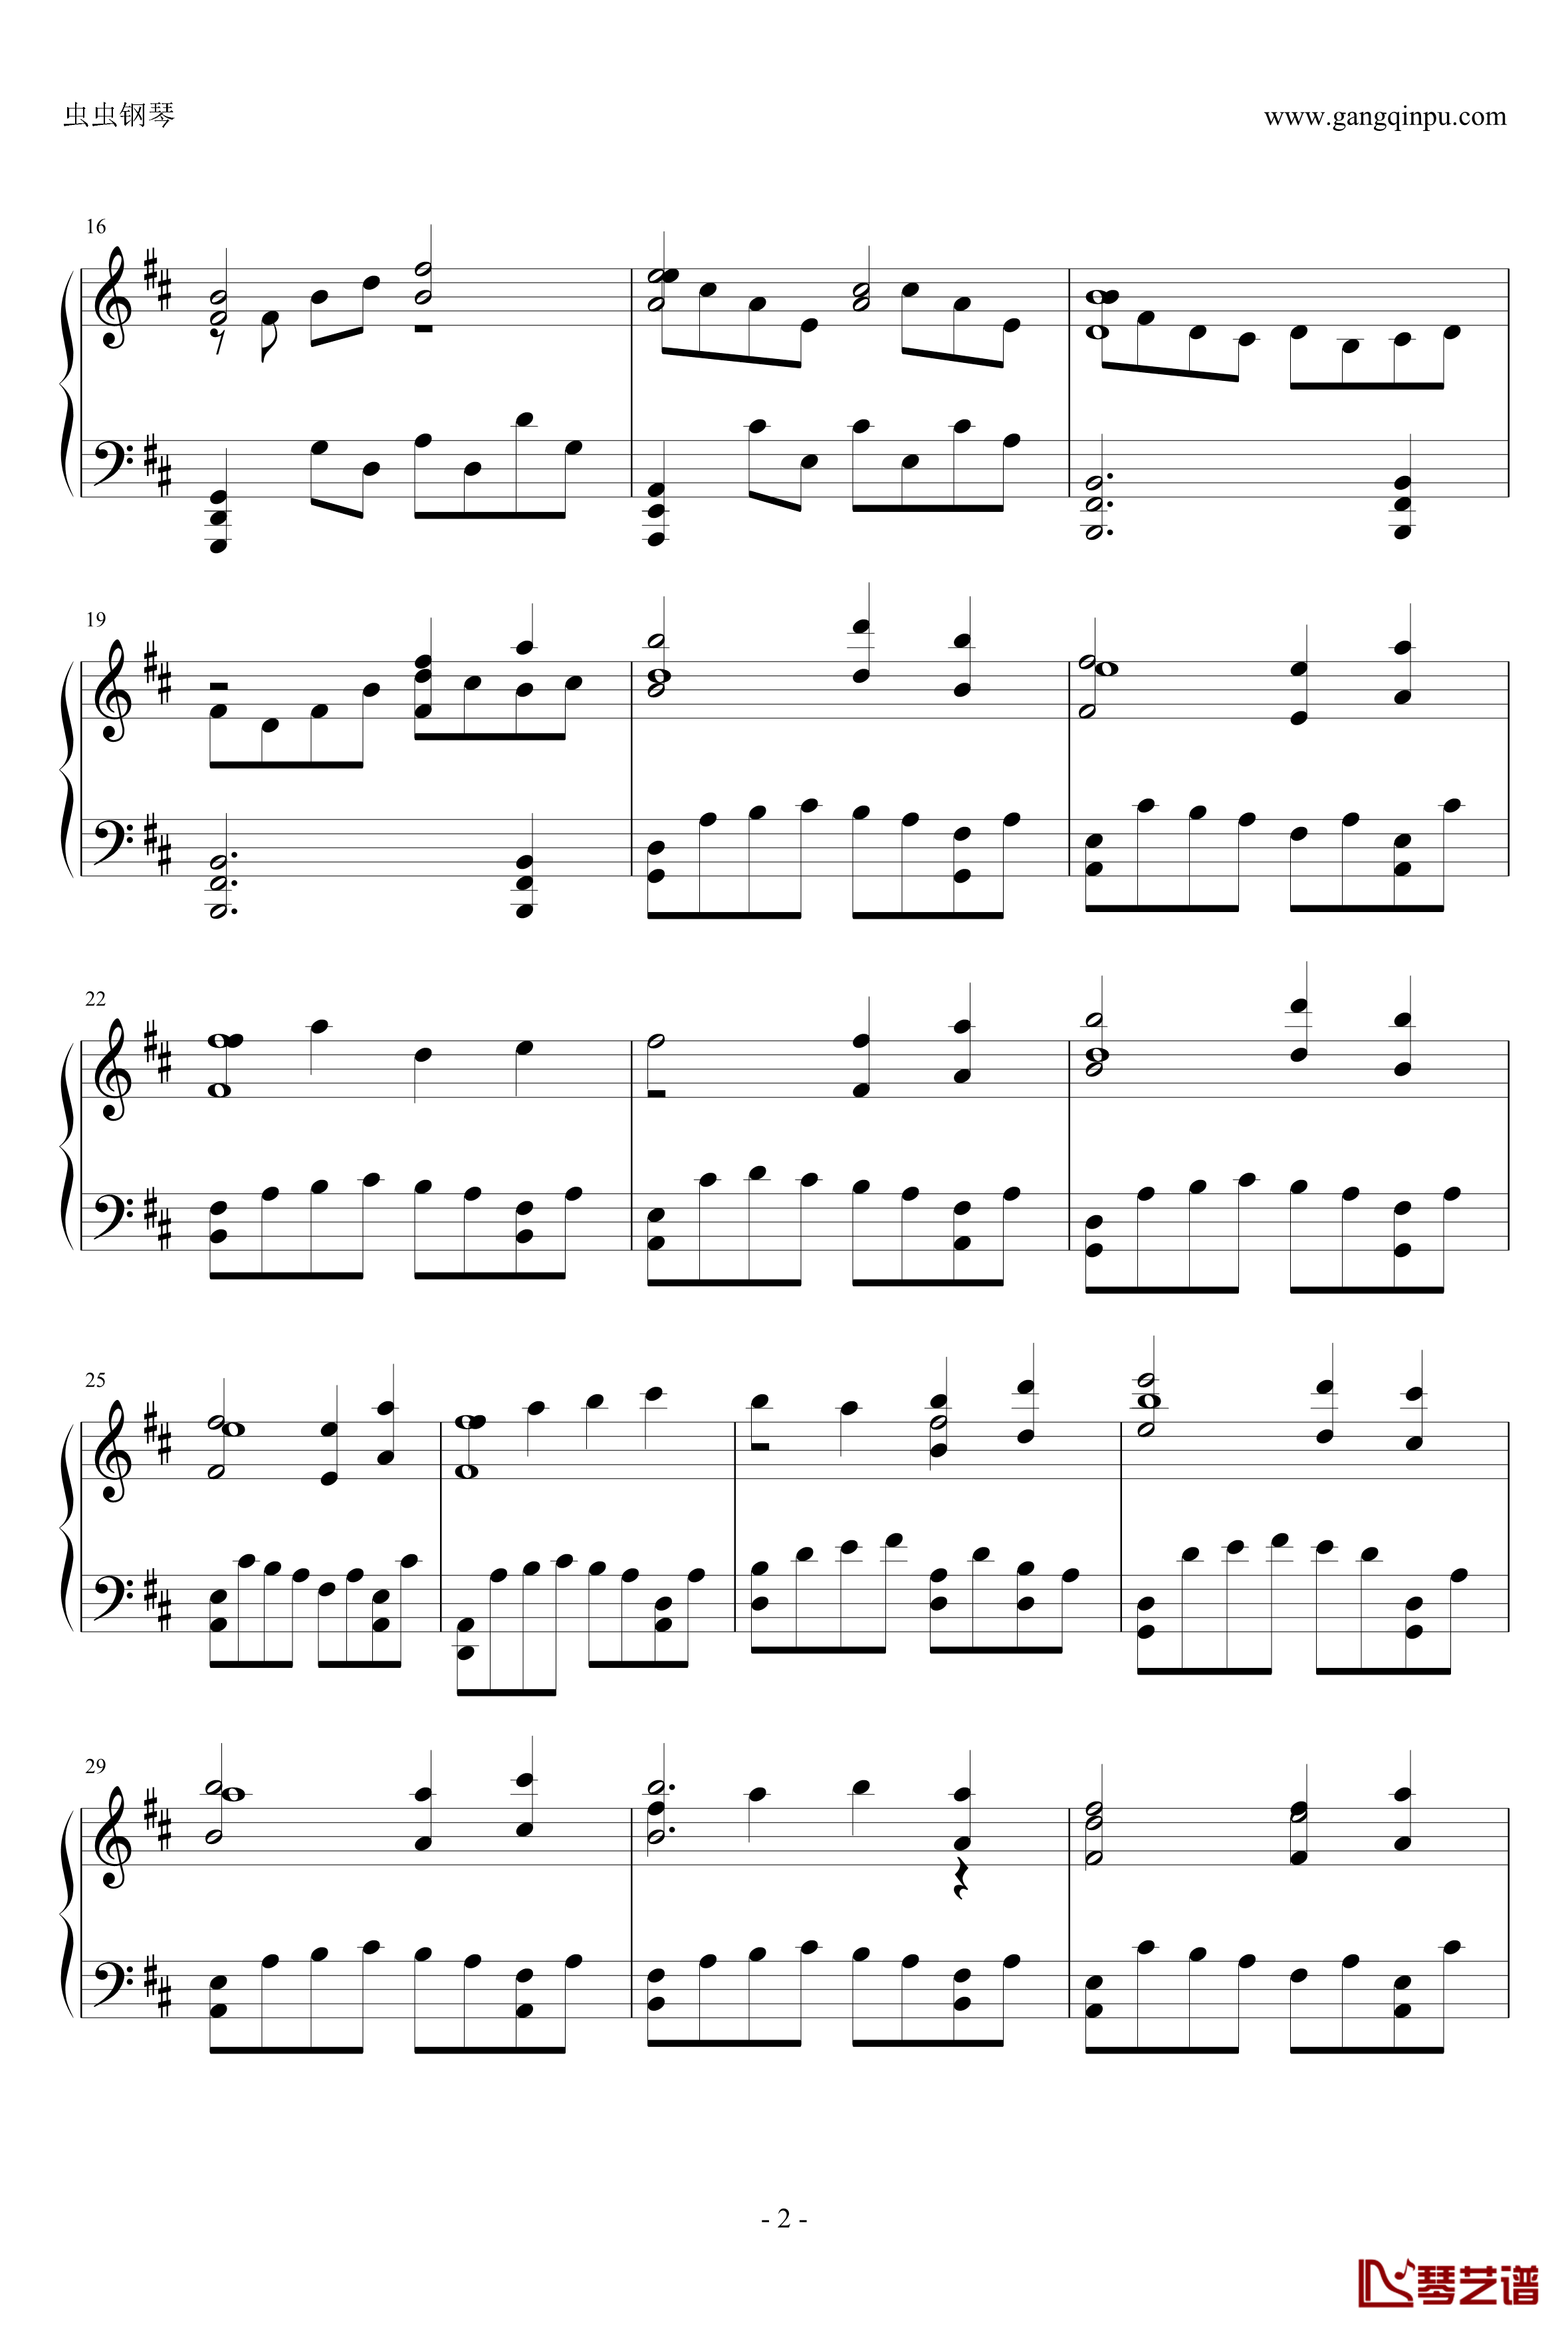  塞下曲钢琴谱-古剑奇谭二2